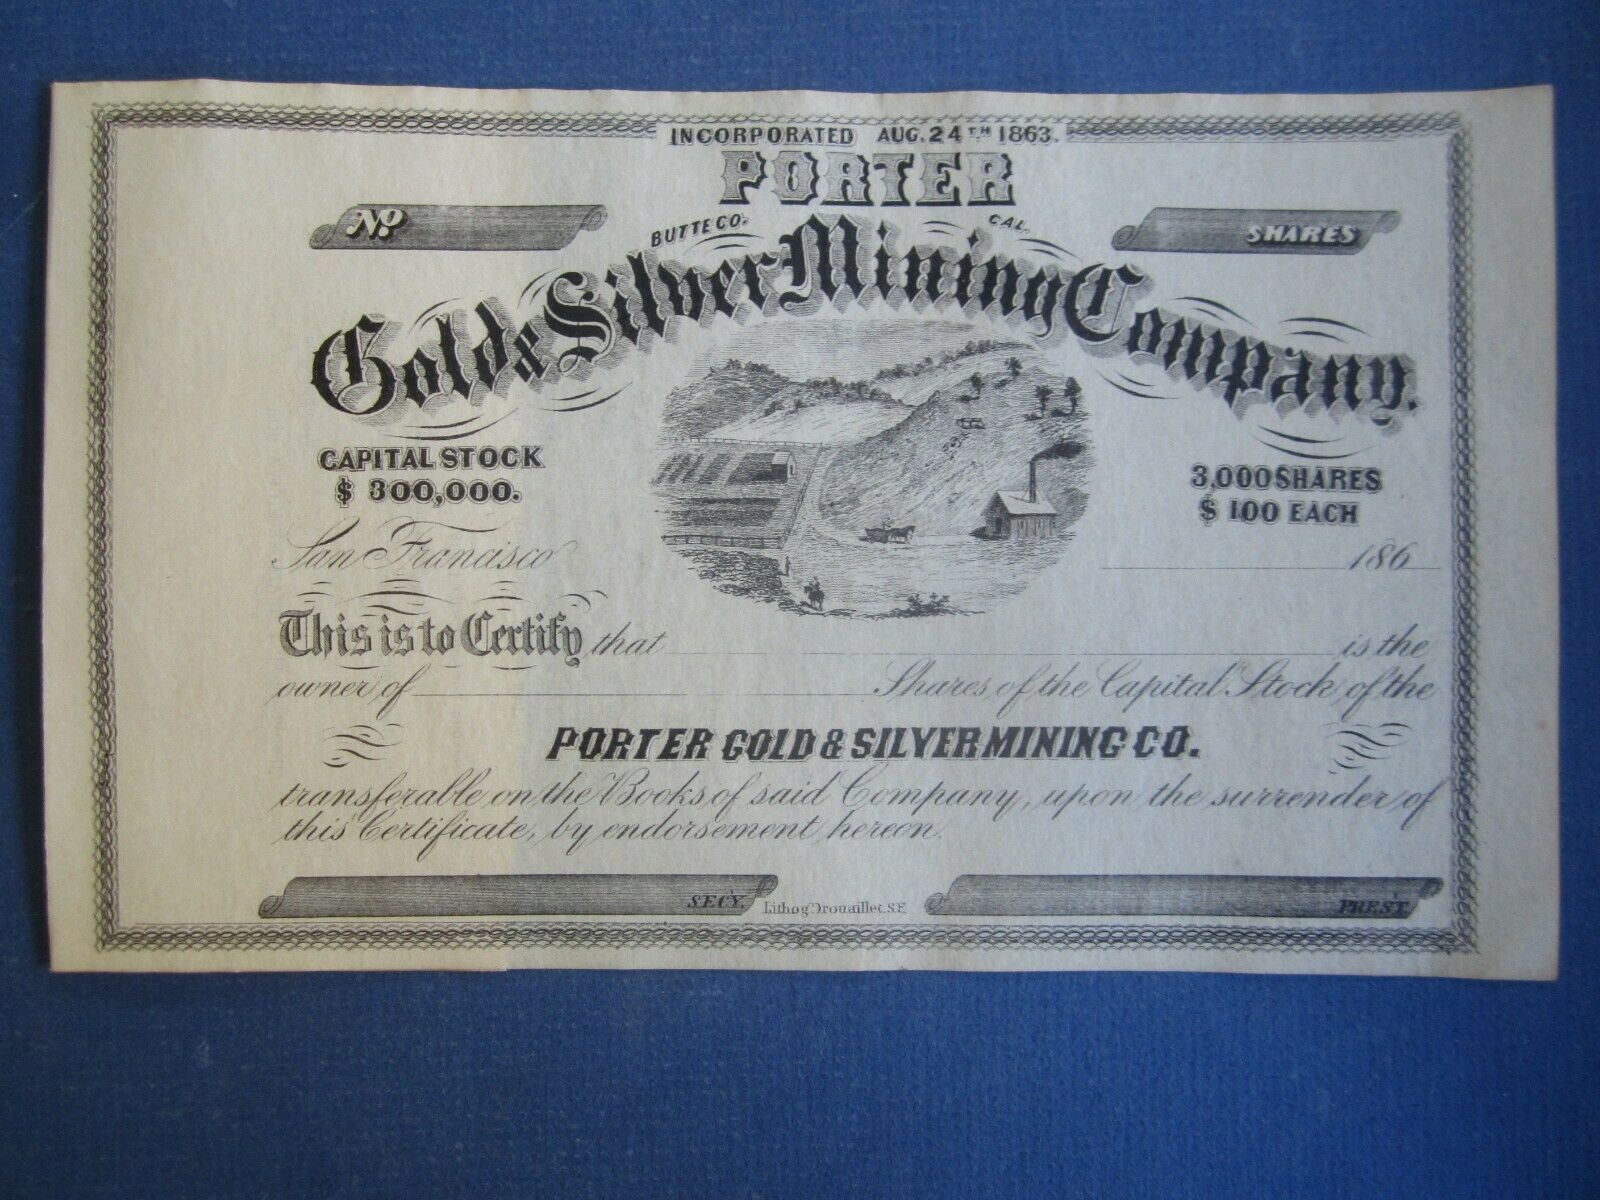 1860